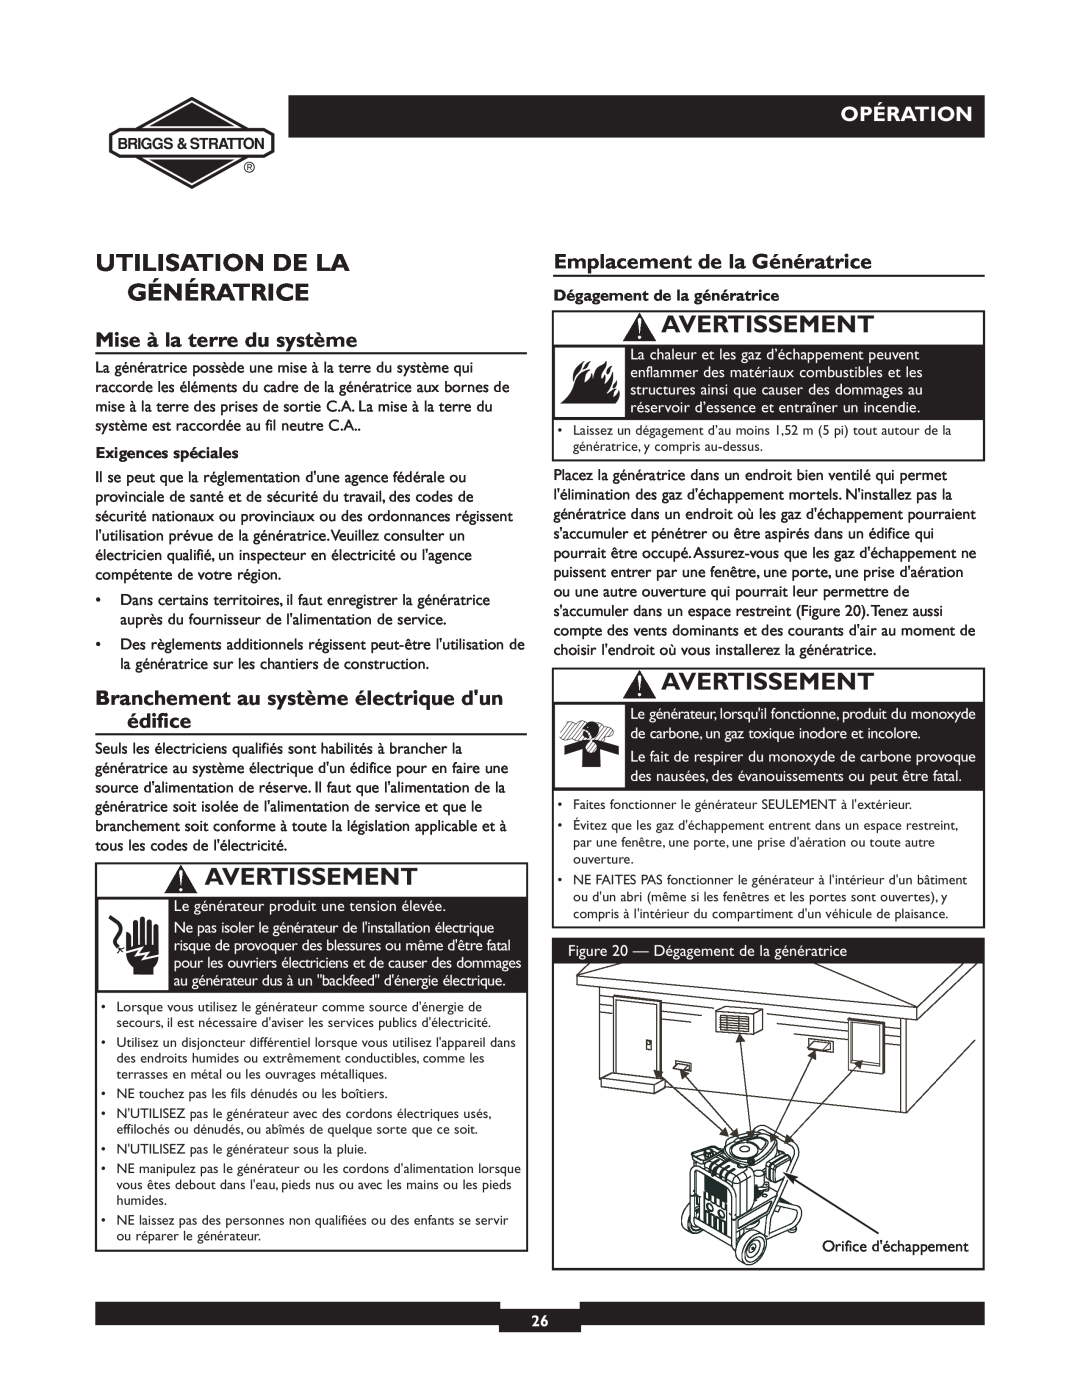 Briggs & Stratton 01894-1 manual Utilisation De La Génératrice, Mise à la terre du système, Opération, Avertissement 